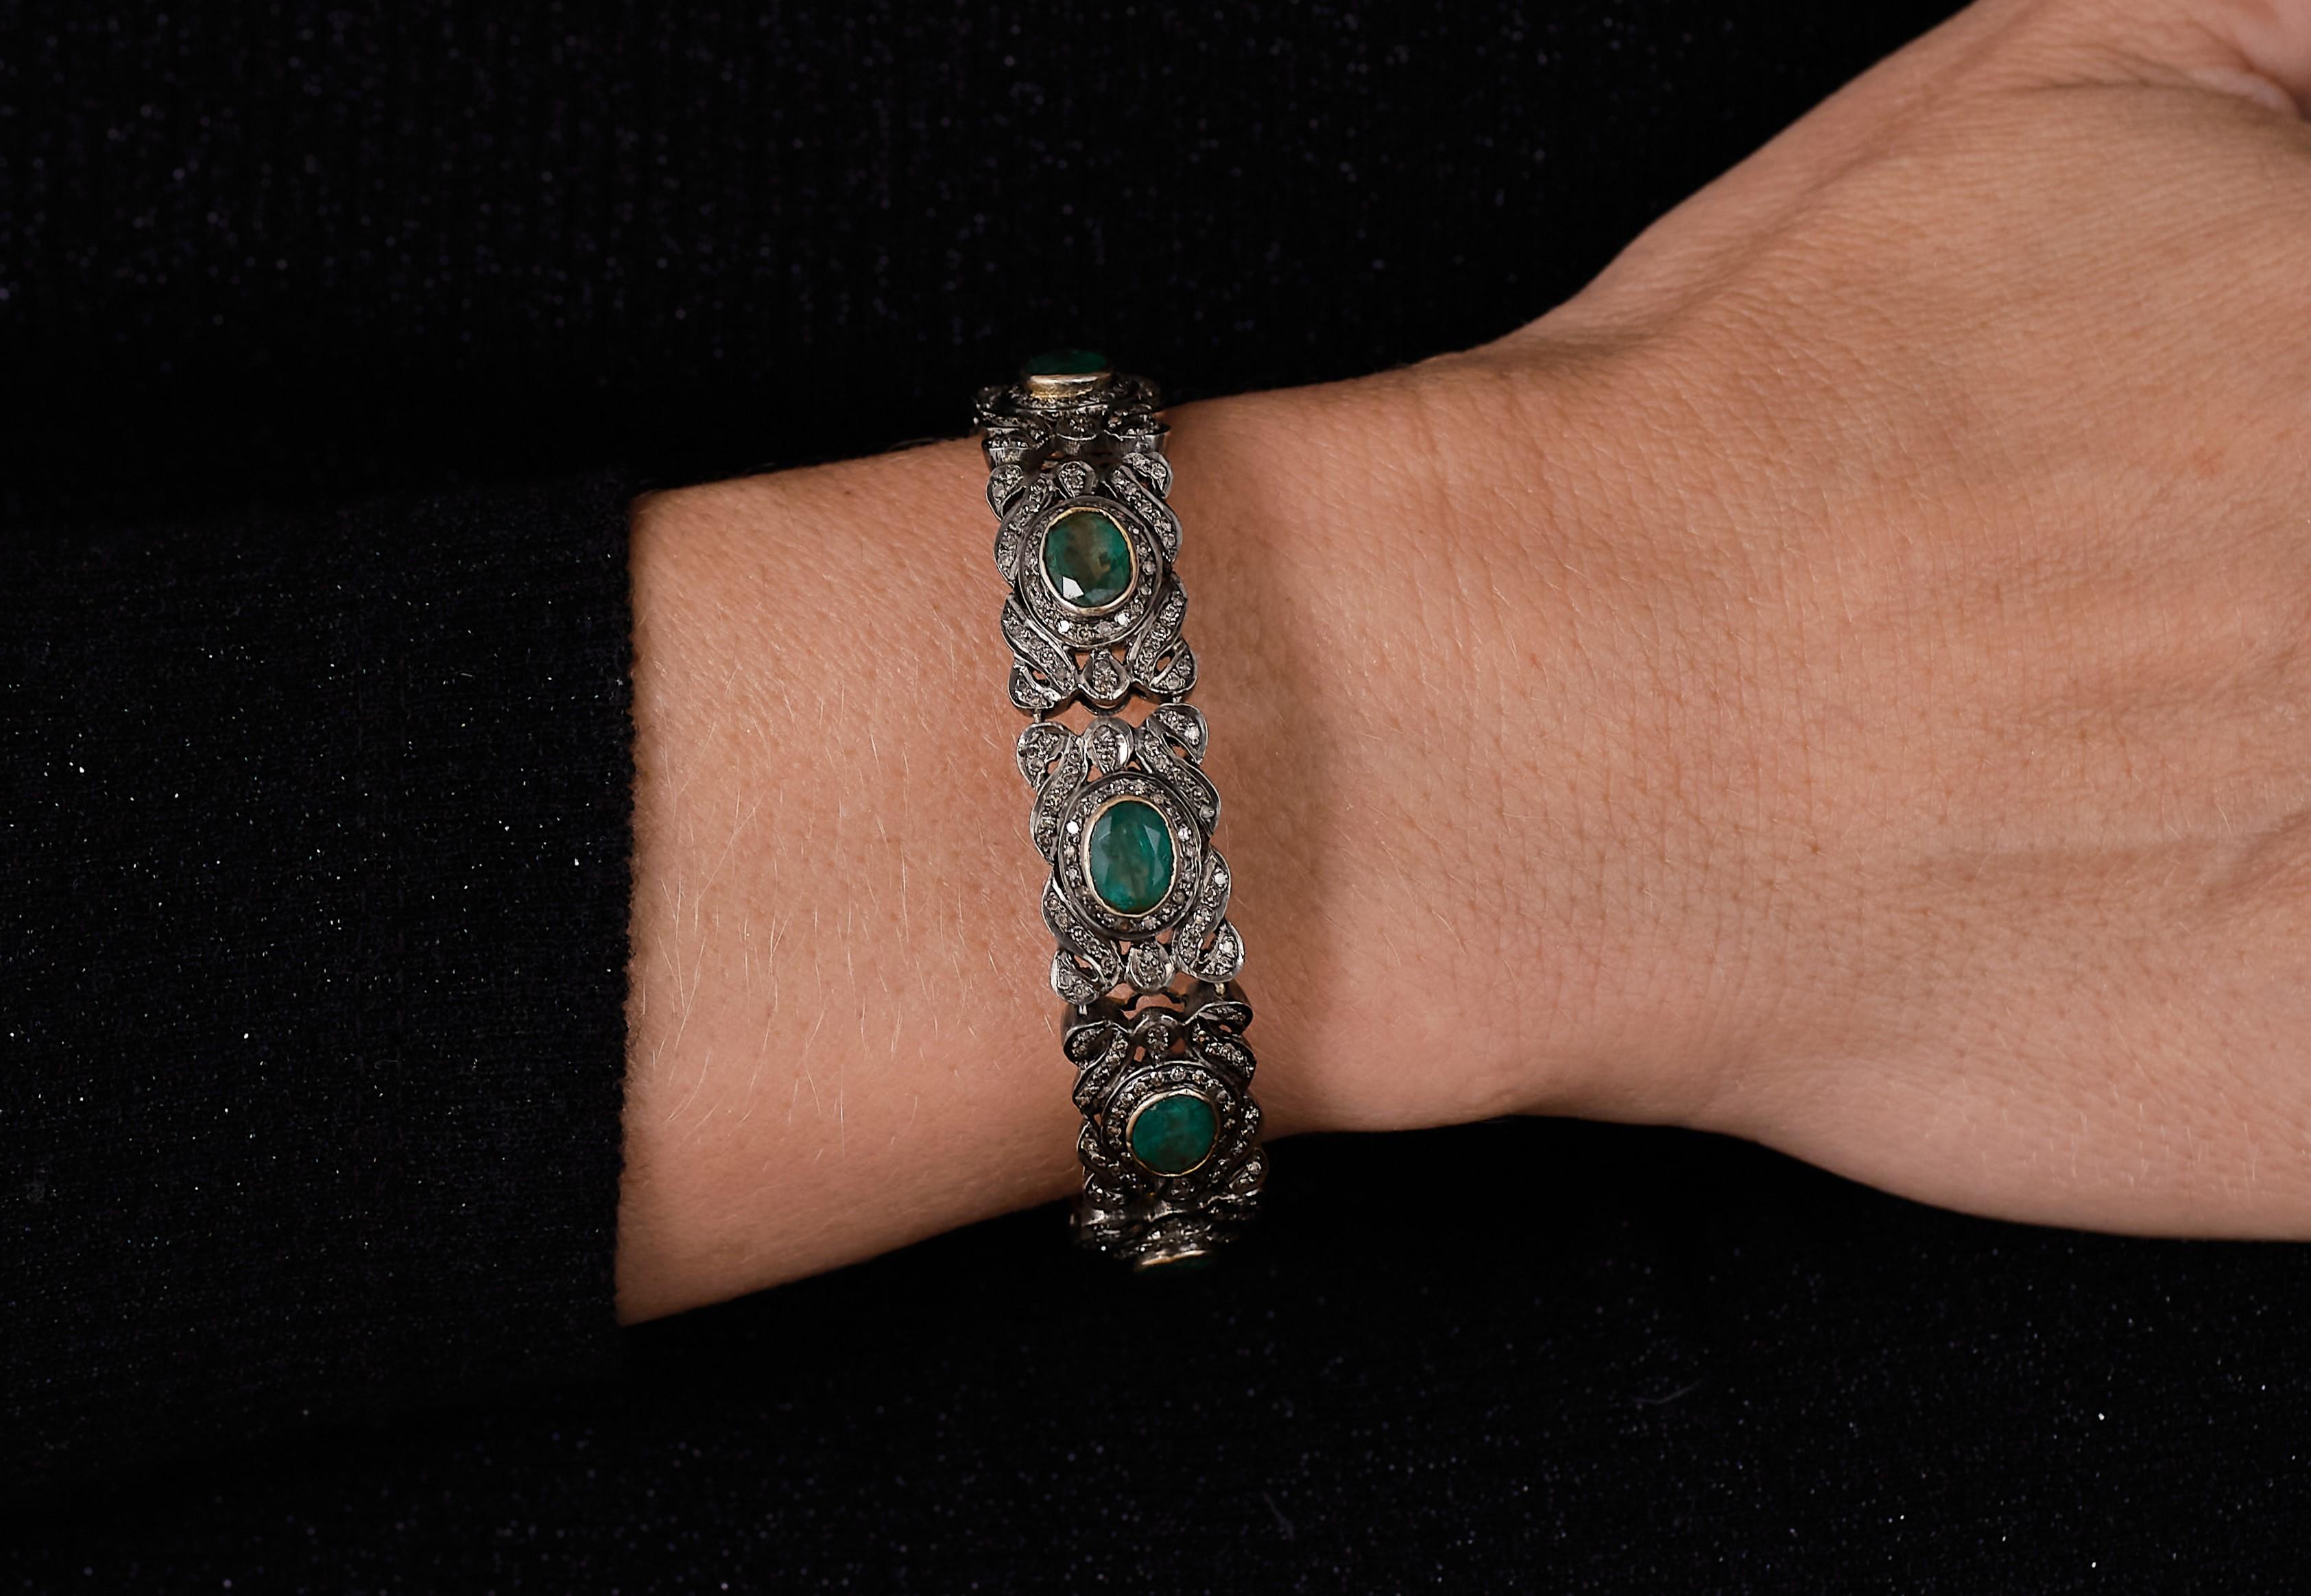 Antikes Smaragdarmband aus der Belle Epoque,  

Verführerisches und hypnotisierendes abgedunkeltes Silber, akzentuiert durch üppige tiefgrüne Smaragde. Eine elegante Abendgarderobe, die an die Geschichte erinnert. 

Handgefertigt aus 14-karätigem